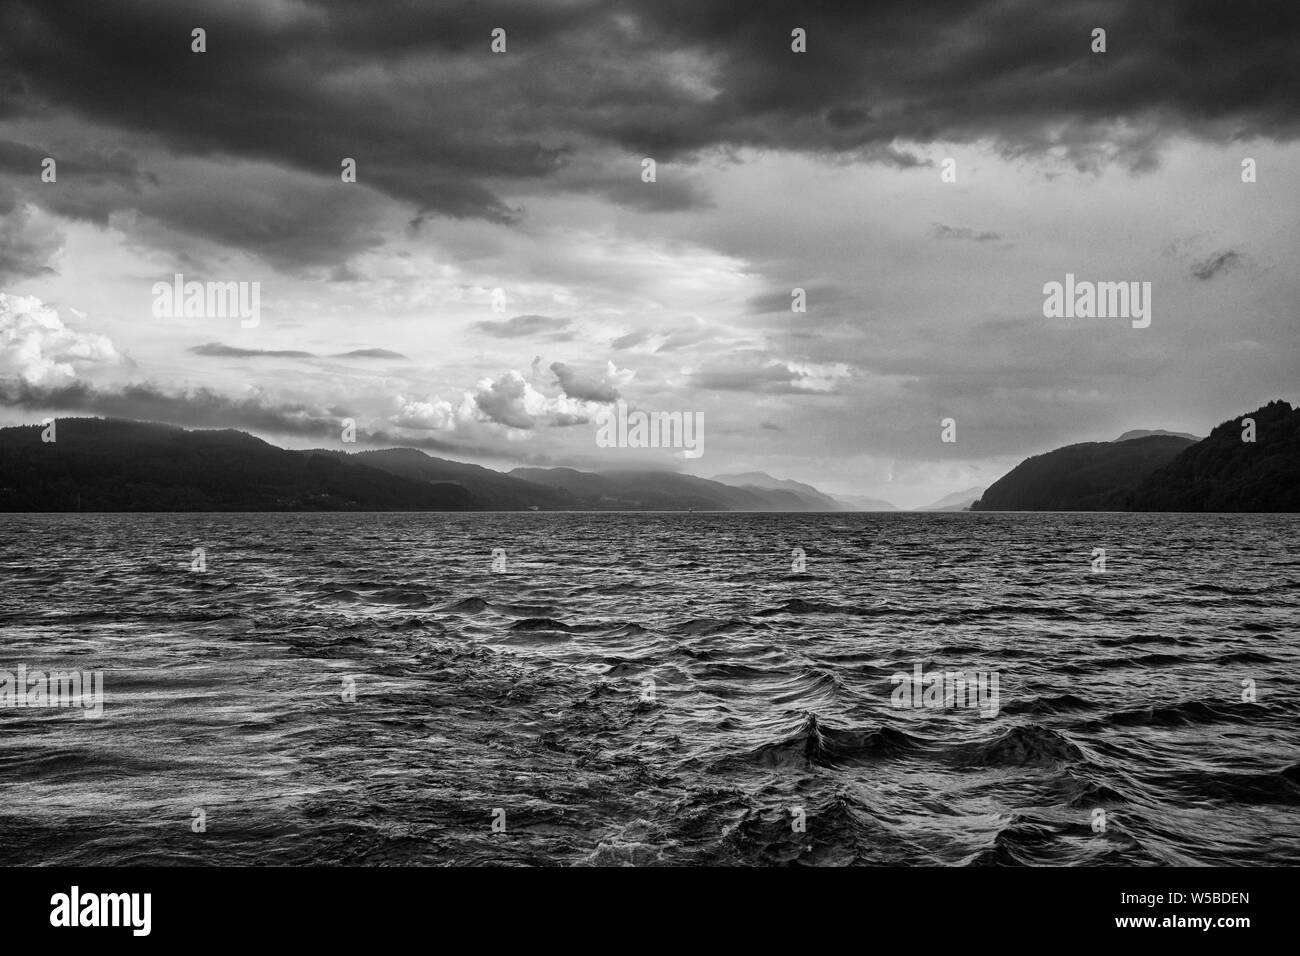 Le Loch Ness, un grand, profond, loch d'eau douce dans les Highlands écossais connu pour de prétendues observations de la Loch Ness, également connu sous le nom de 'Nessie' Banque D'Images